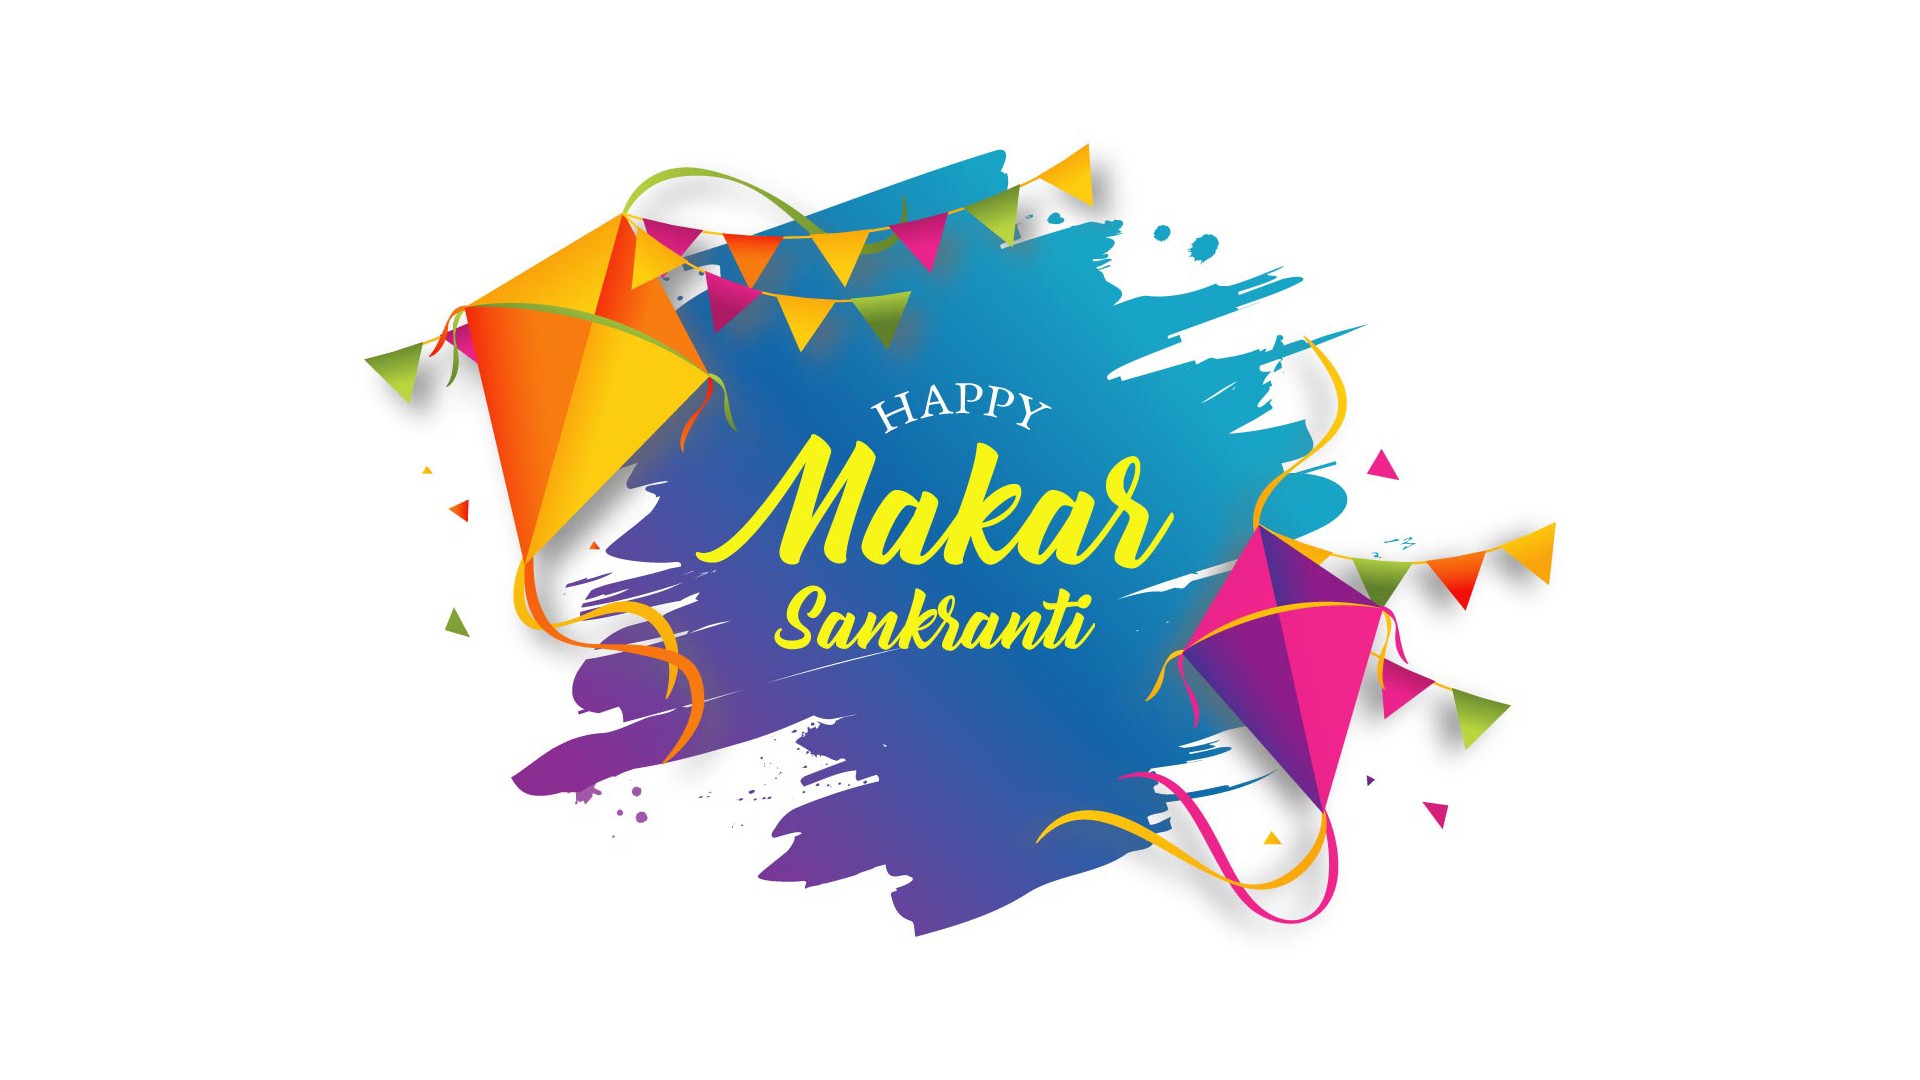 Download Pic Of Happy Makar Sankranti - Happy Sankranti Images Download -  1920x1080 Wallpaper 